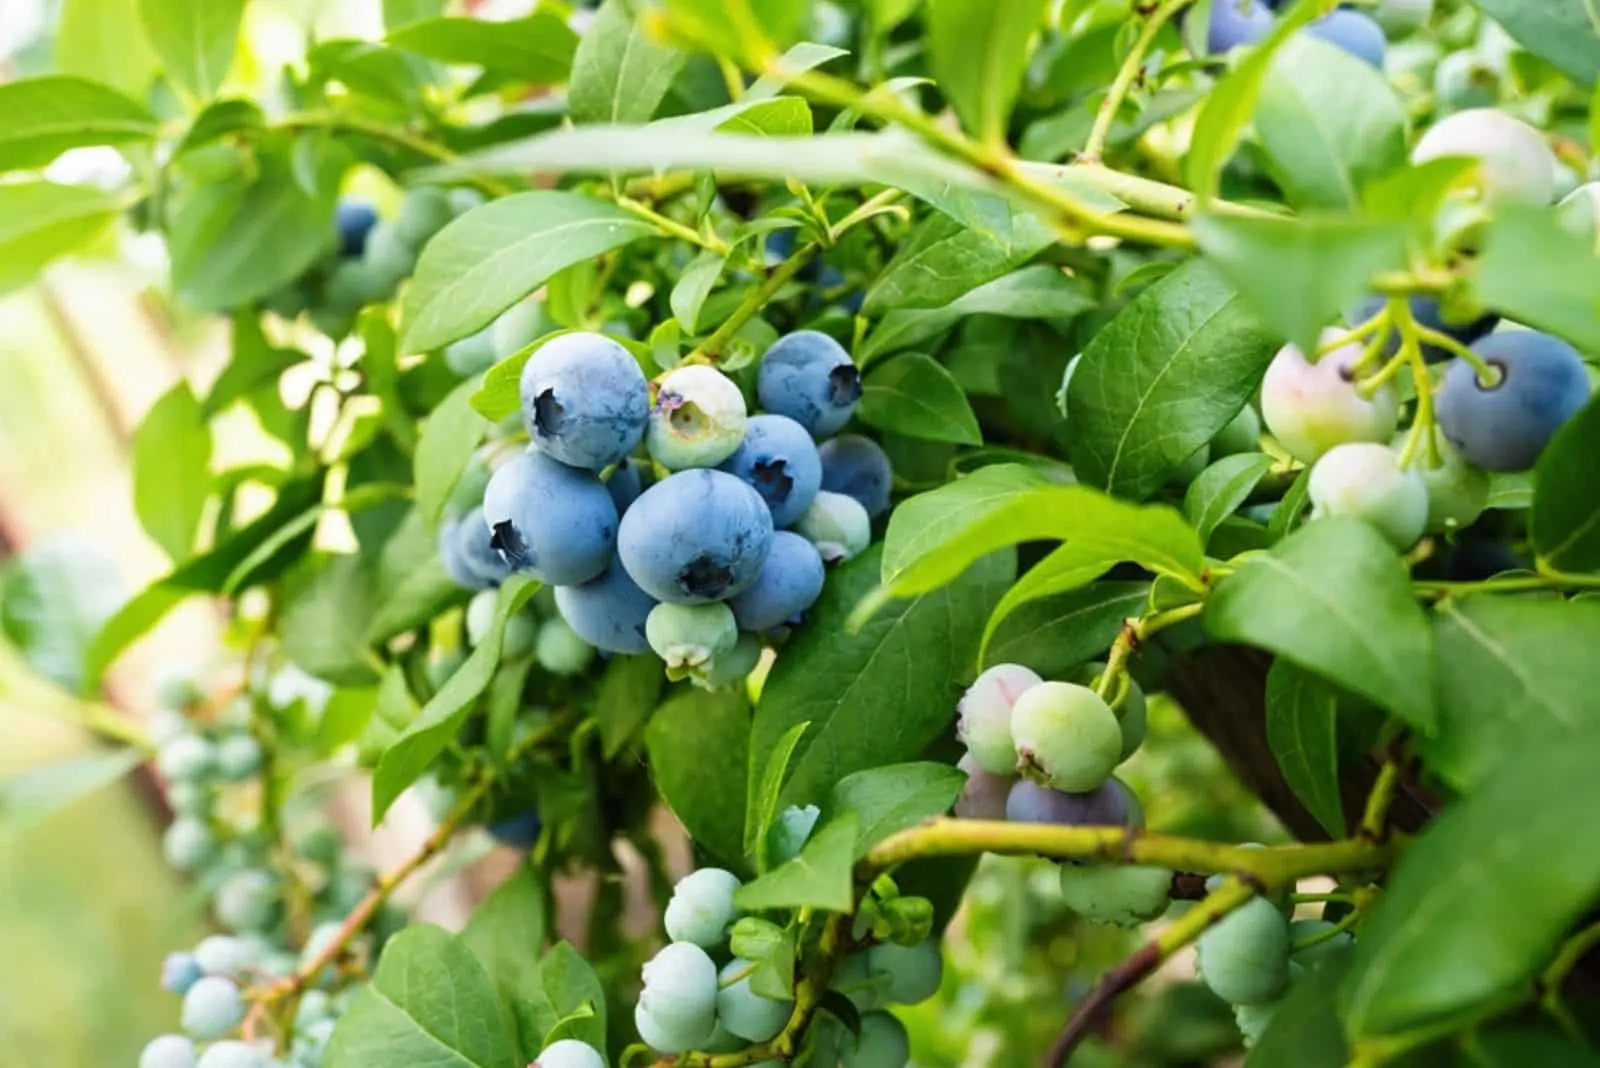 Ripe blueberries (Vaccinium Corymbosum) in homemade garden